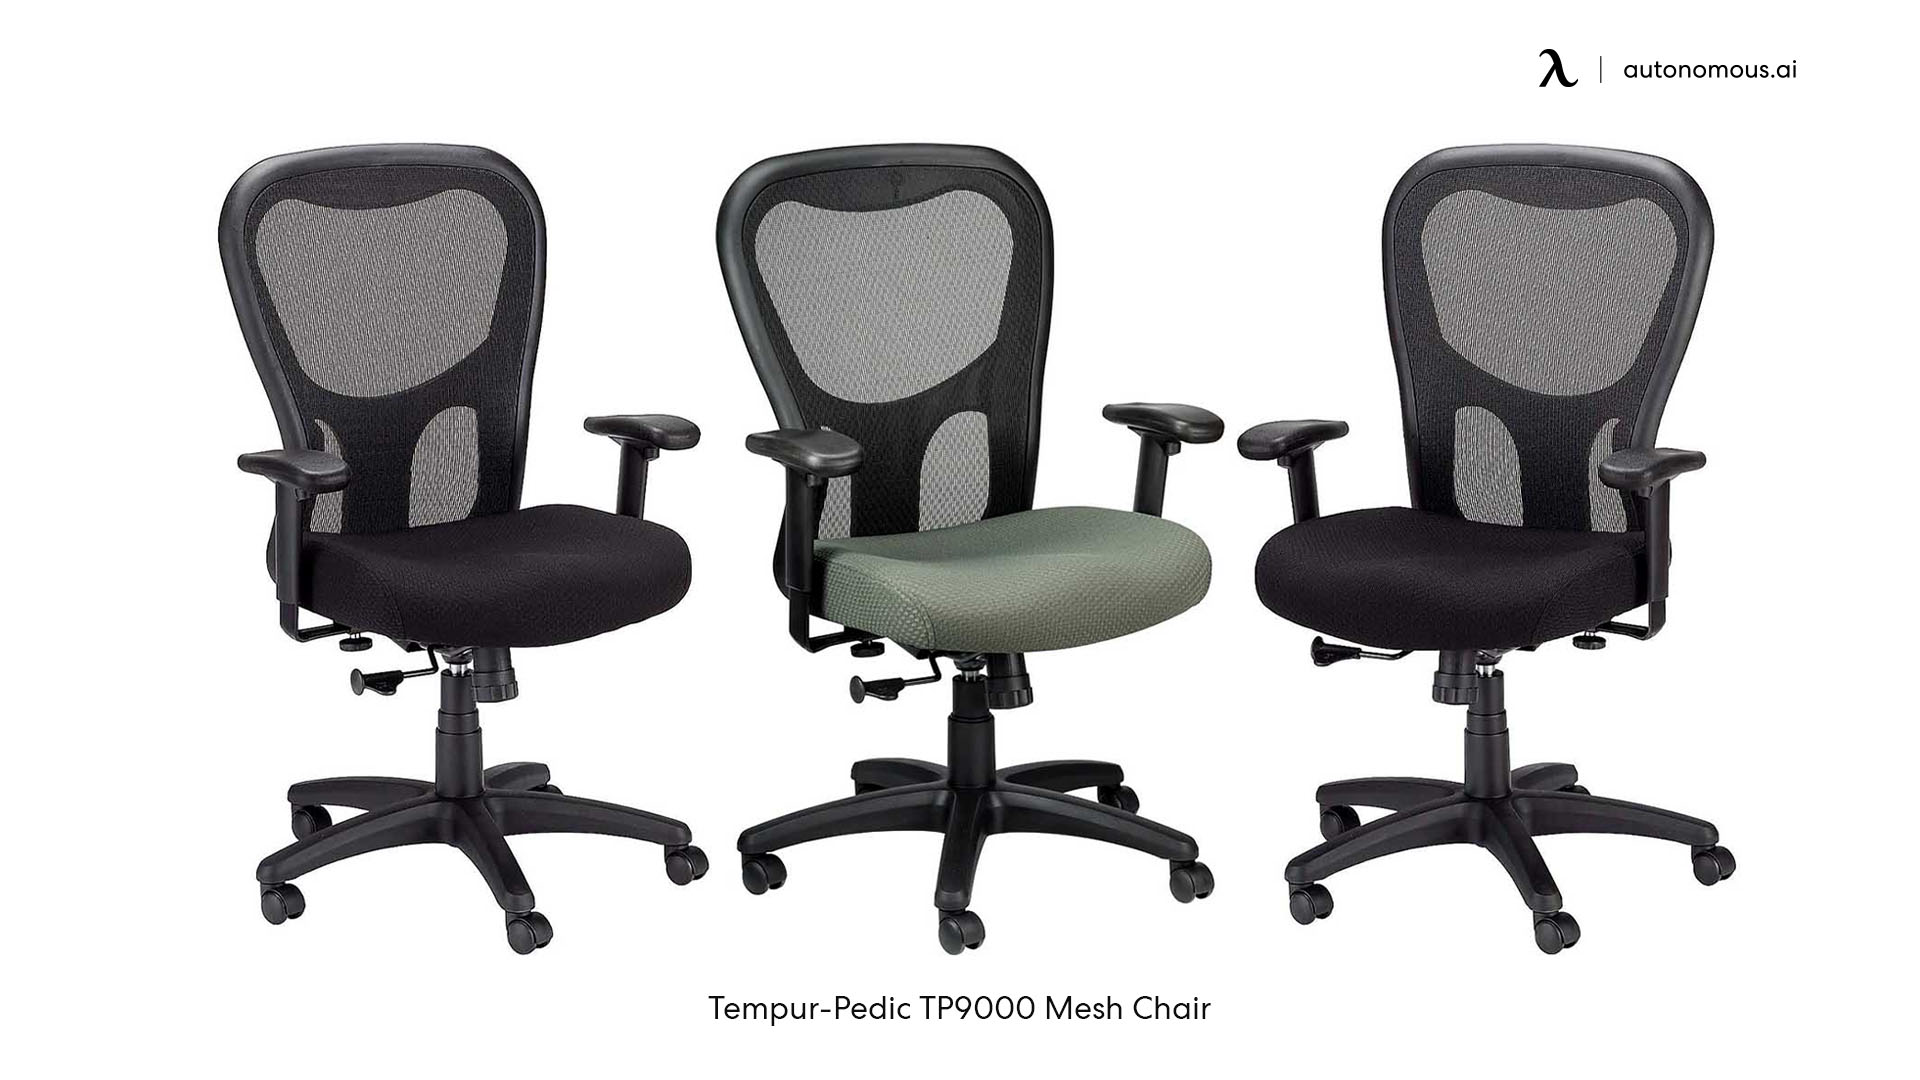 Tempur-Pedic TP9000 Mesh Chair